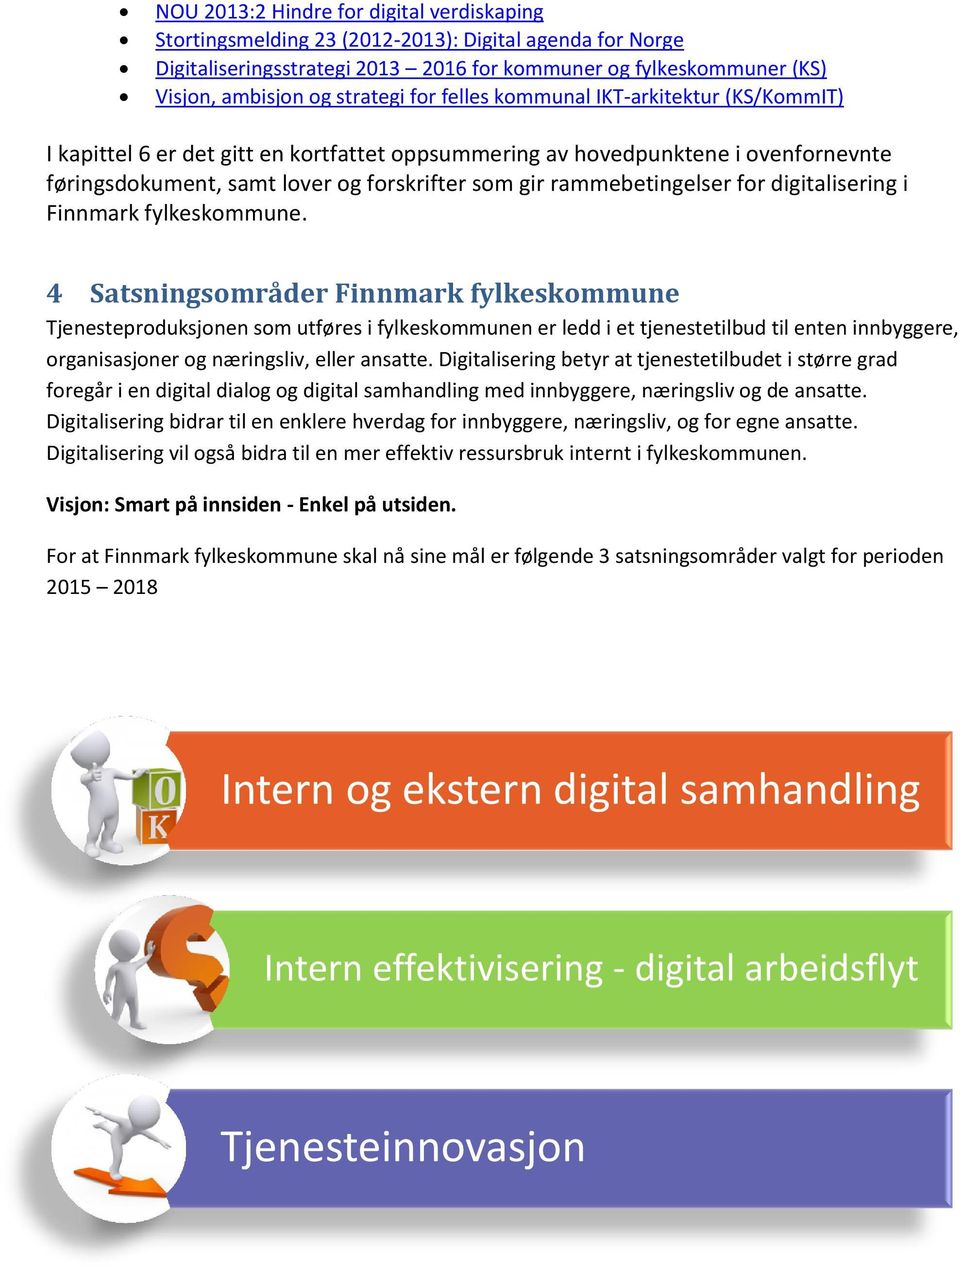 for digitalisering i Finnmark fylkeskommune.